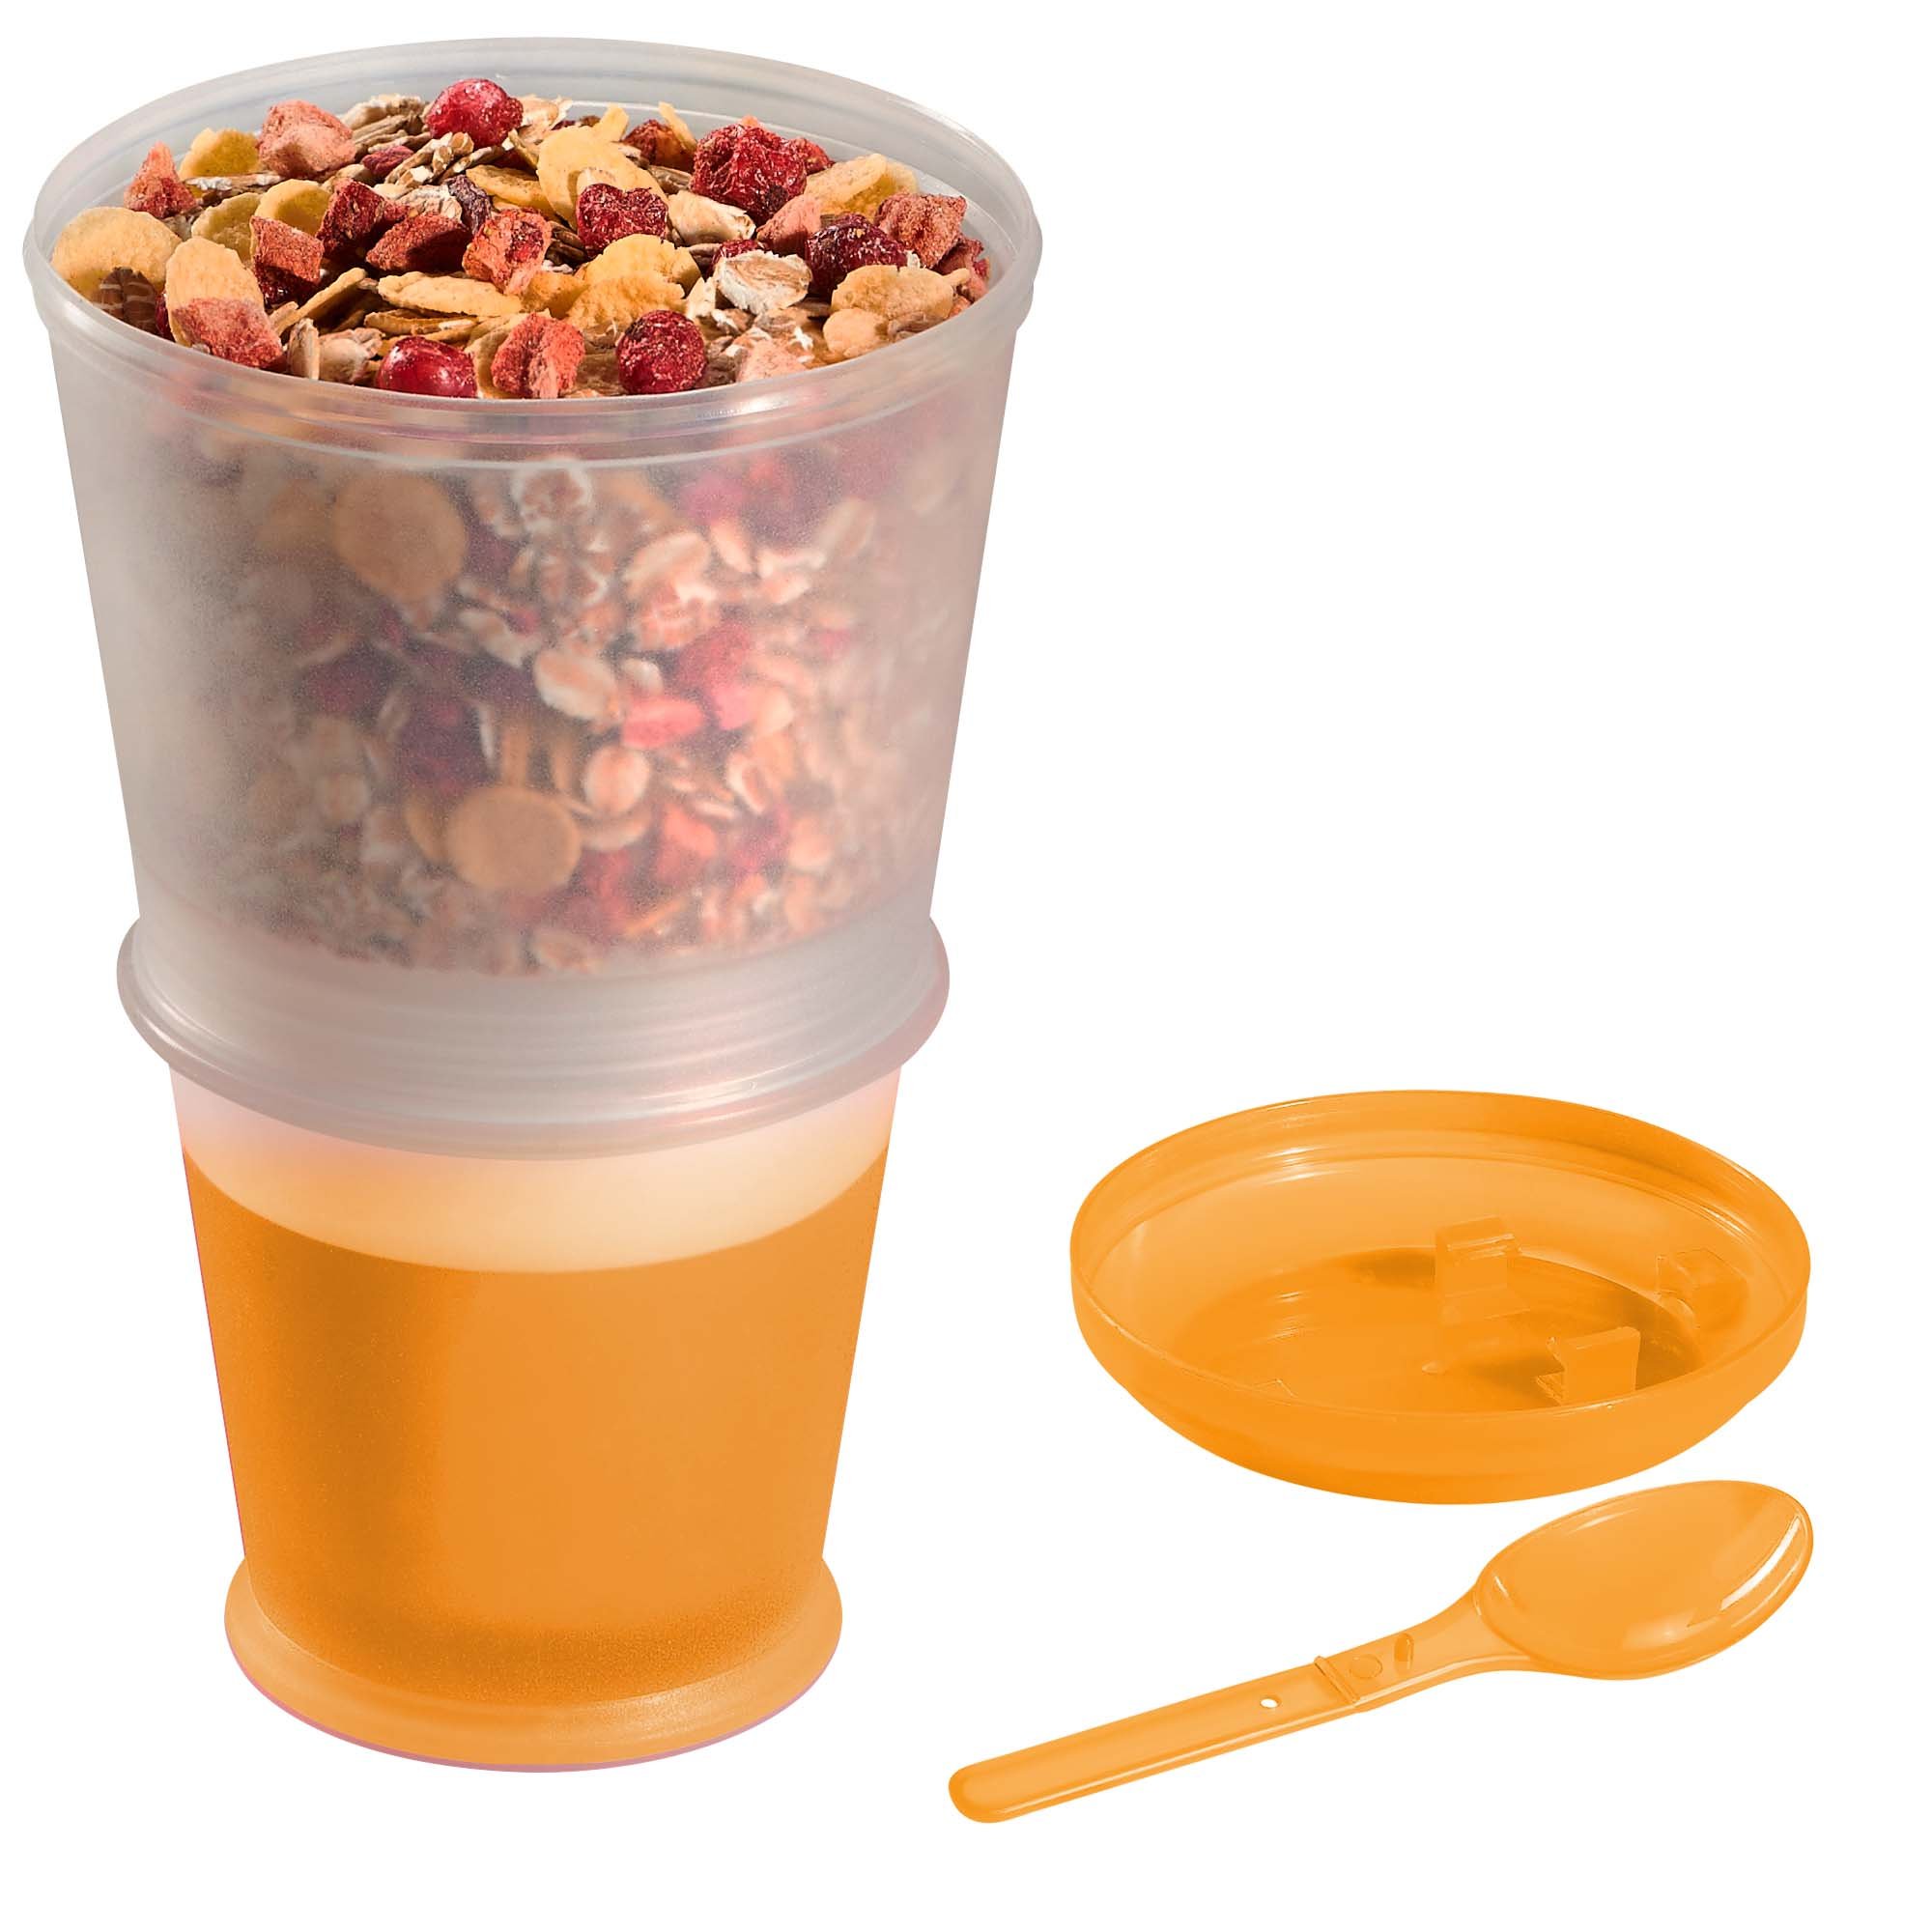 BELLA CUCINA Gobelet à céréales portable, compartiment réfrigérant, cuillère, orange